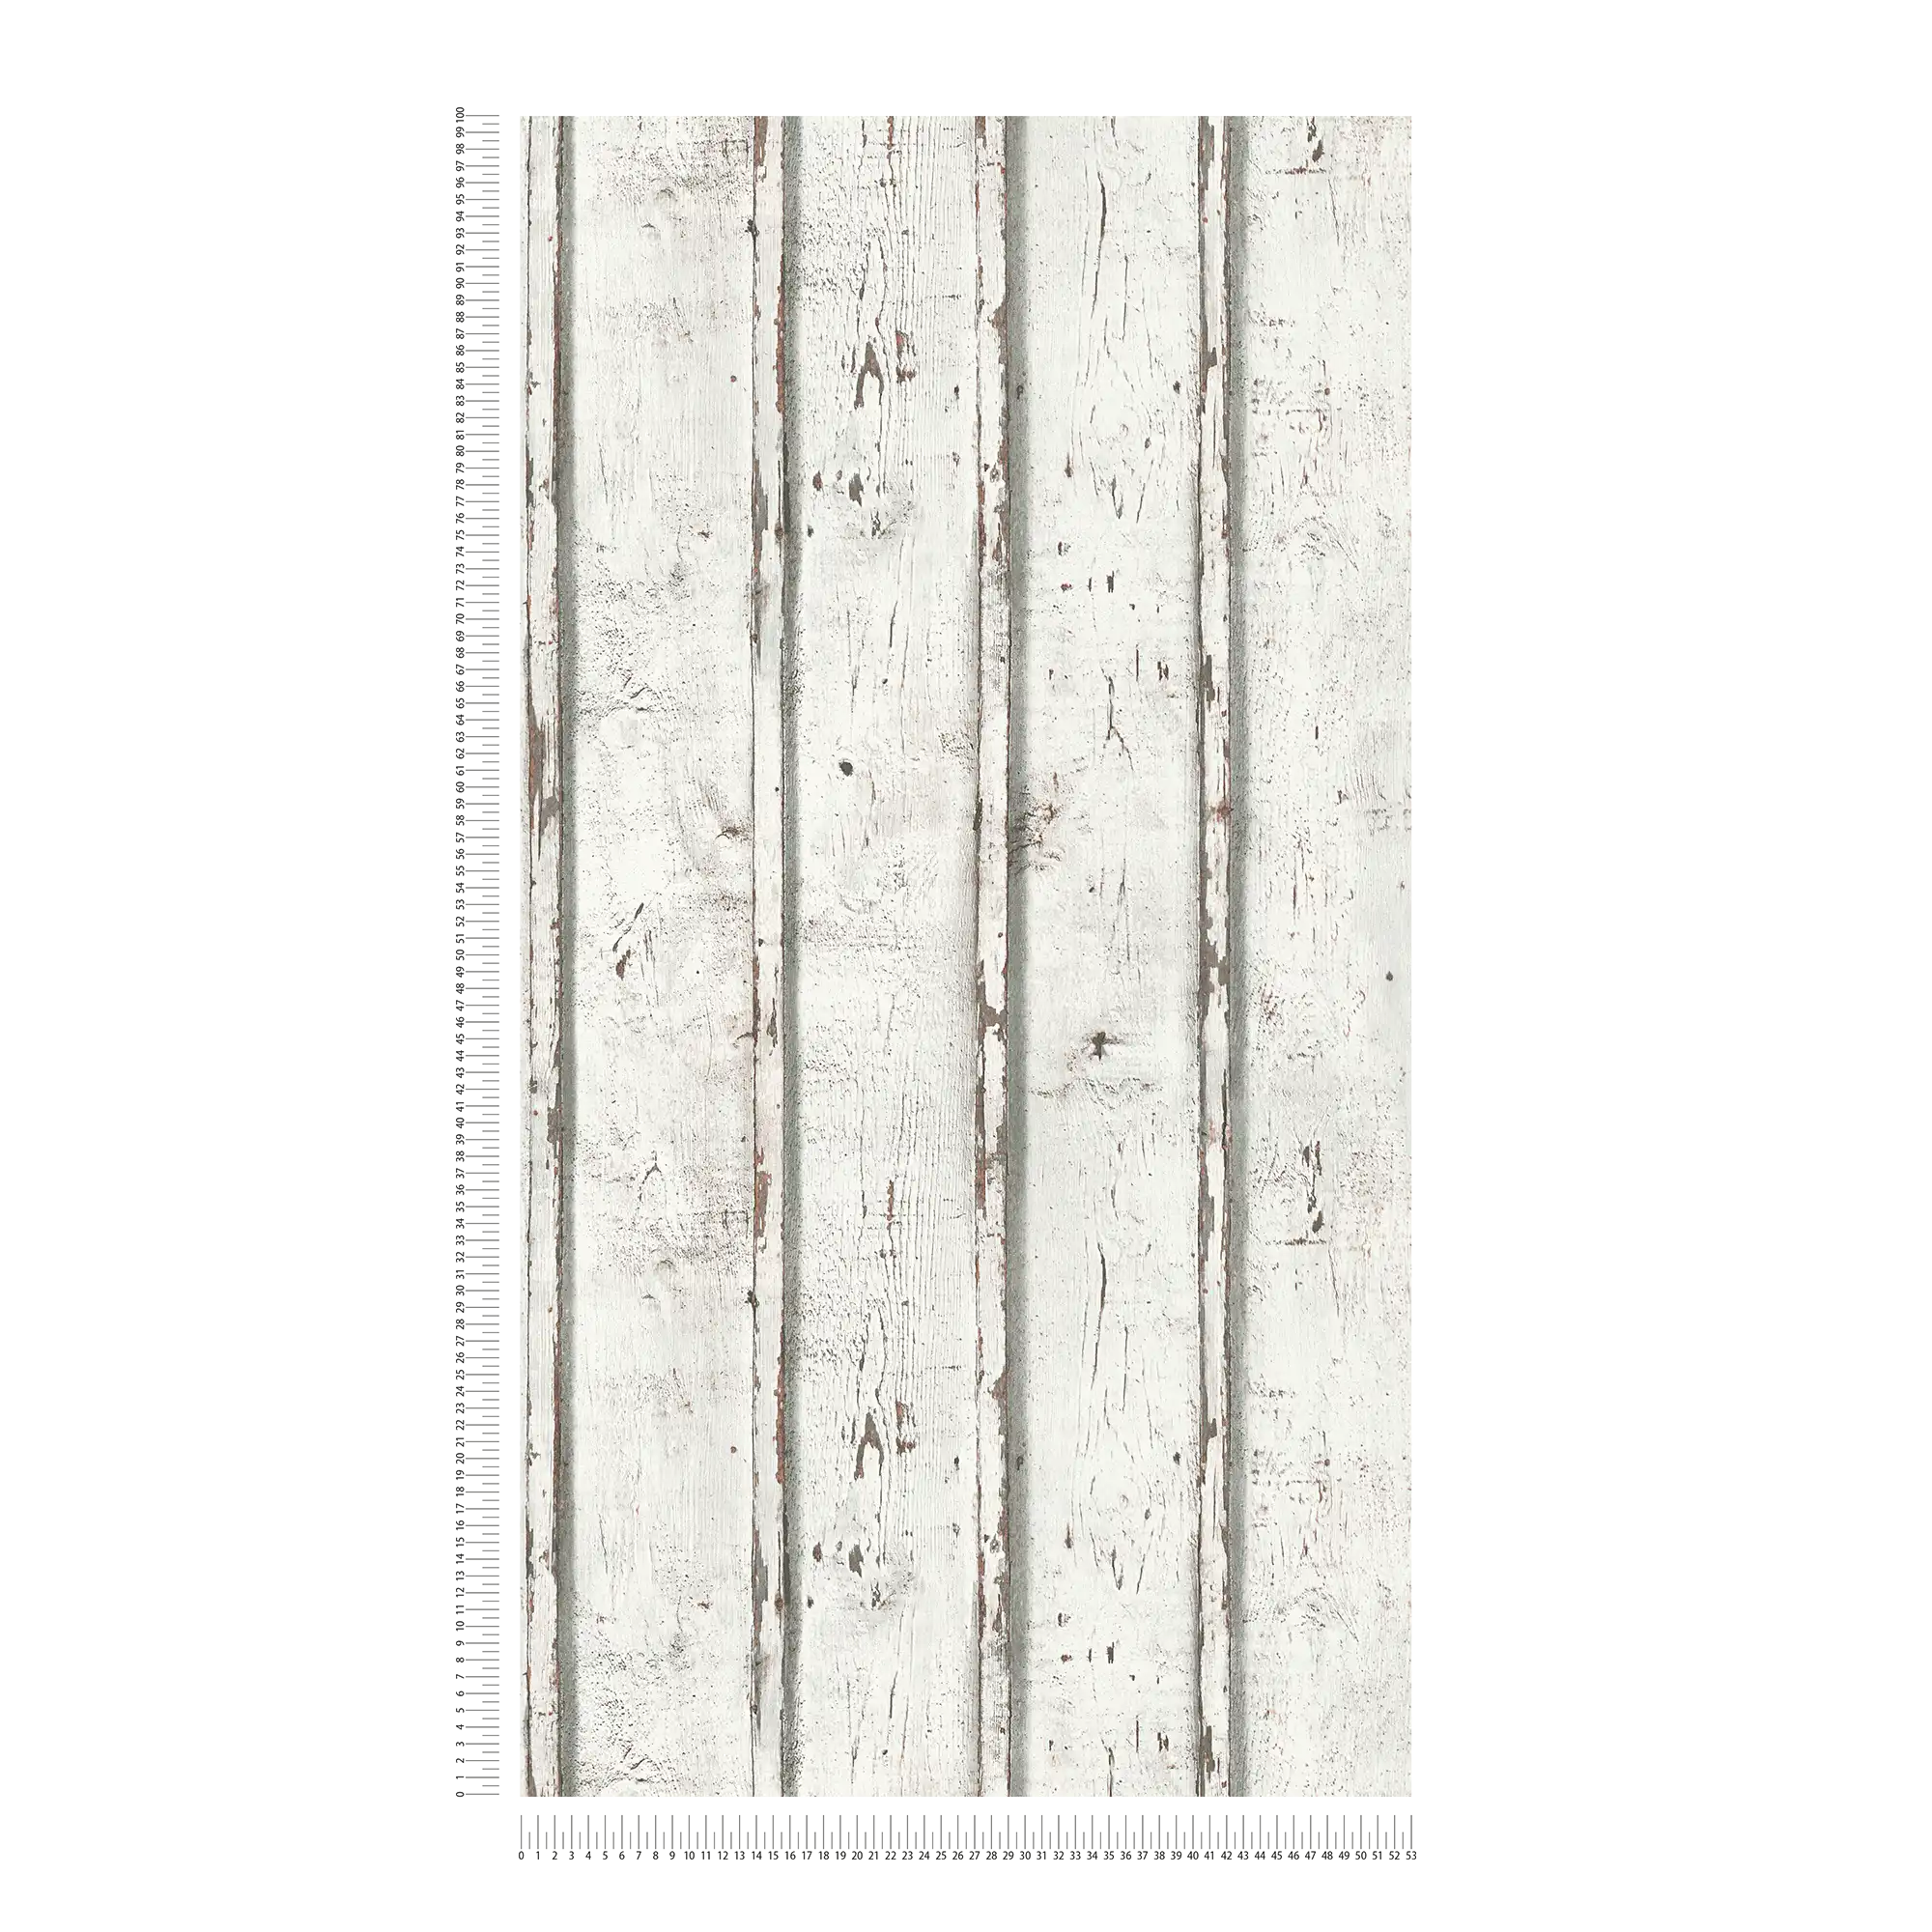             Papier peint bois aspect usé avec planches de bois érodées - blanc, crème, gris
        